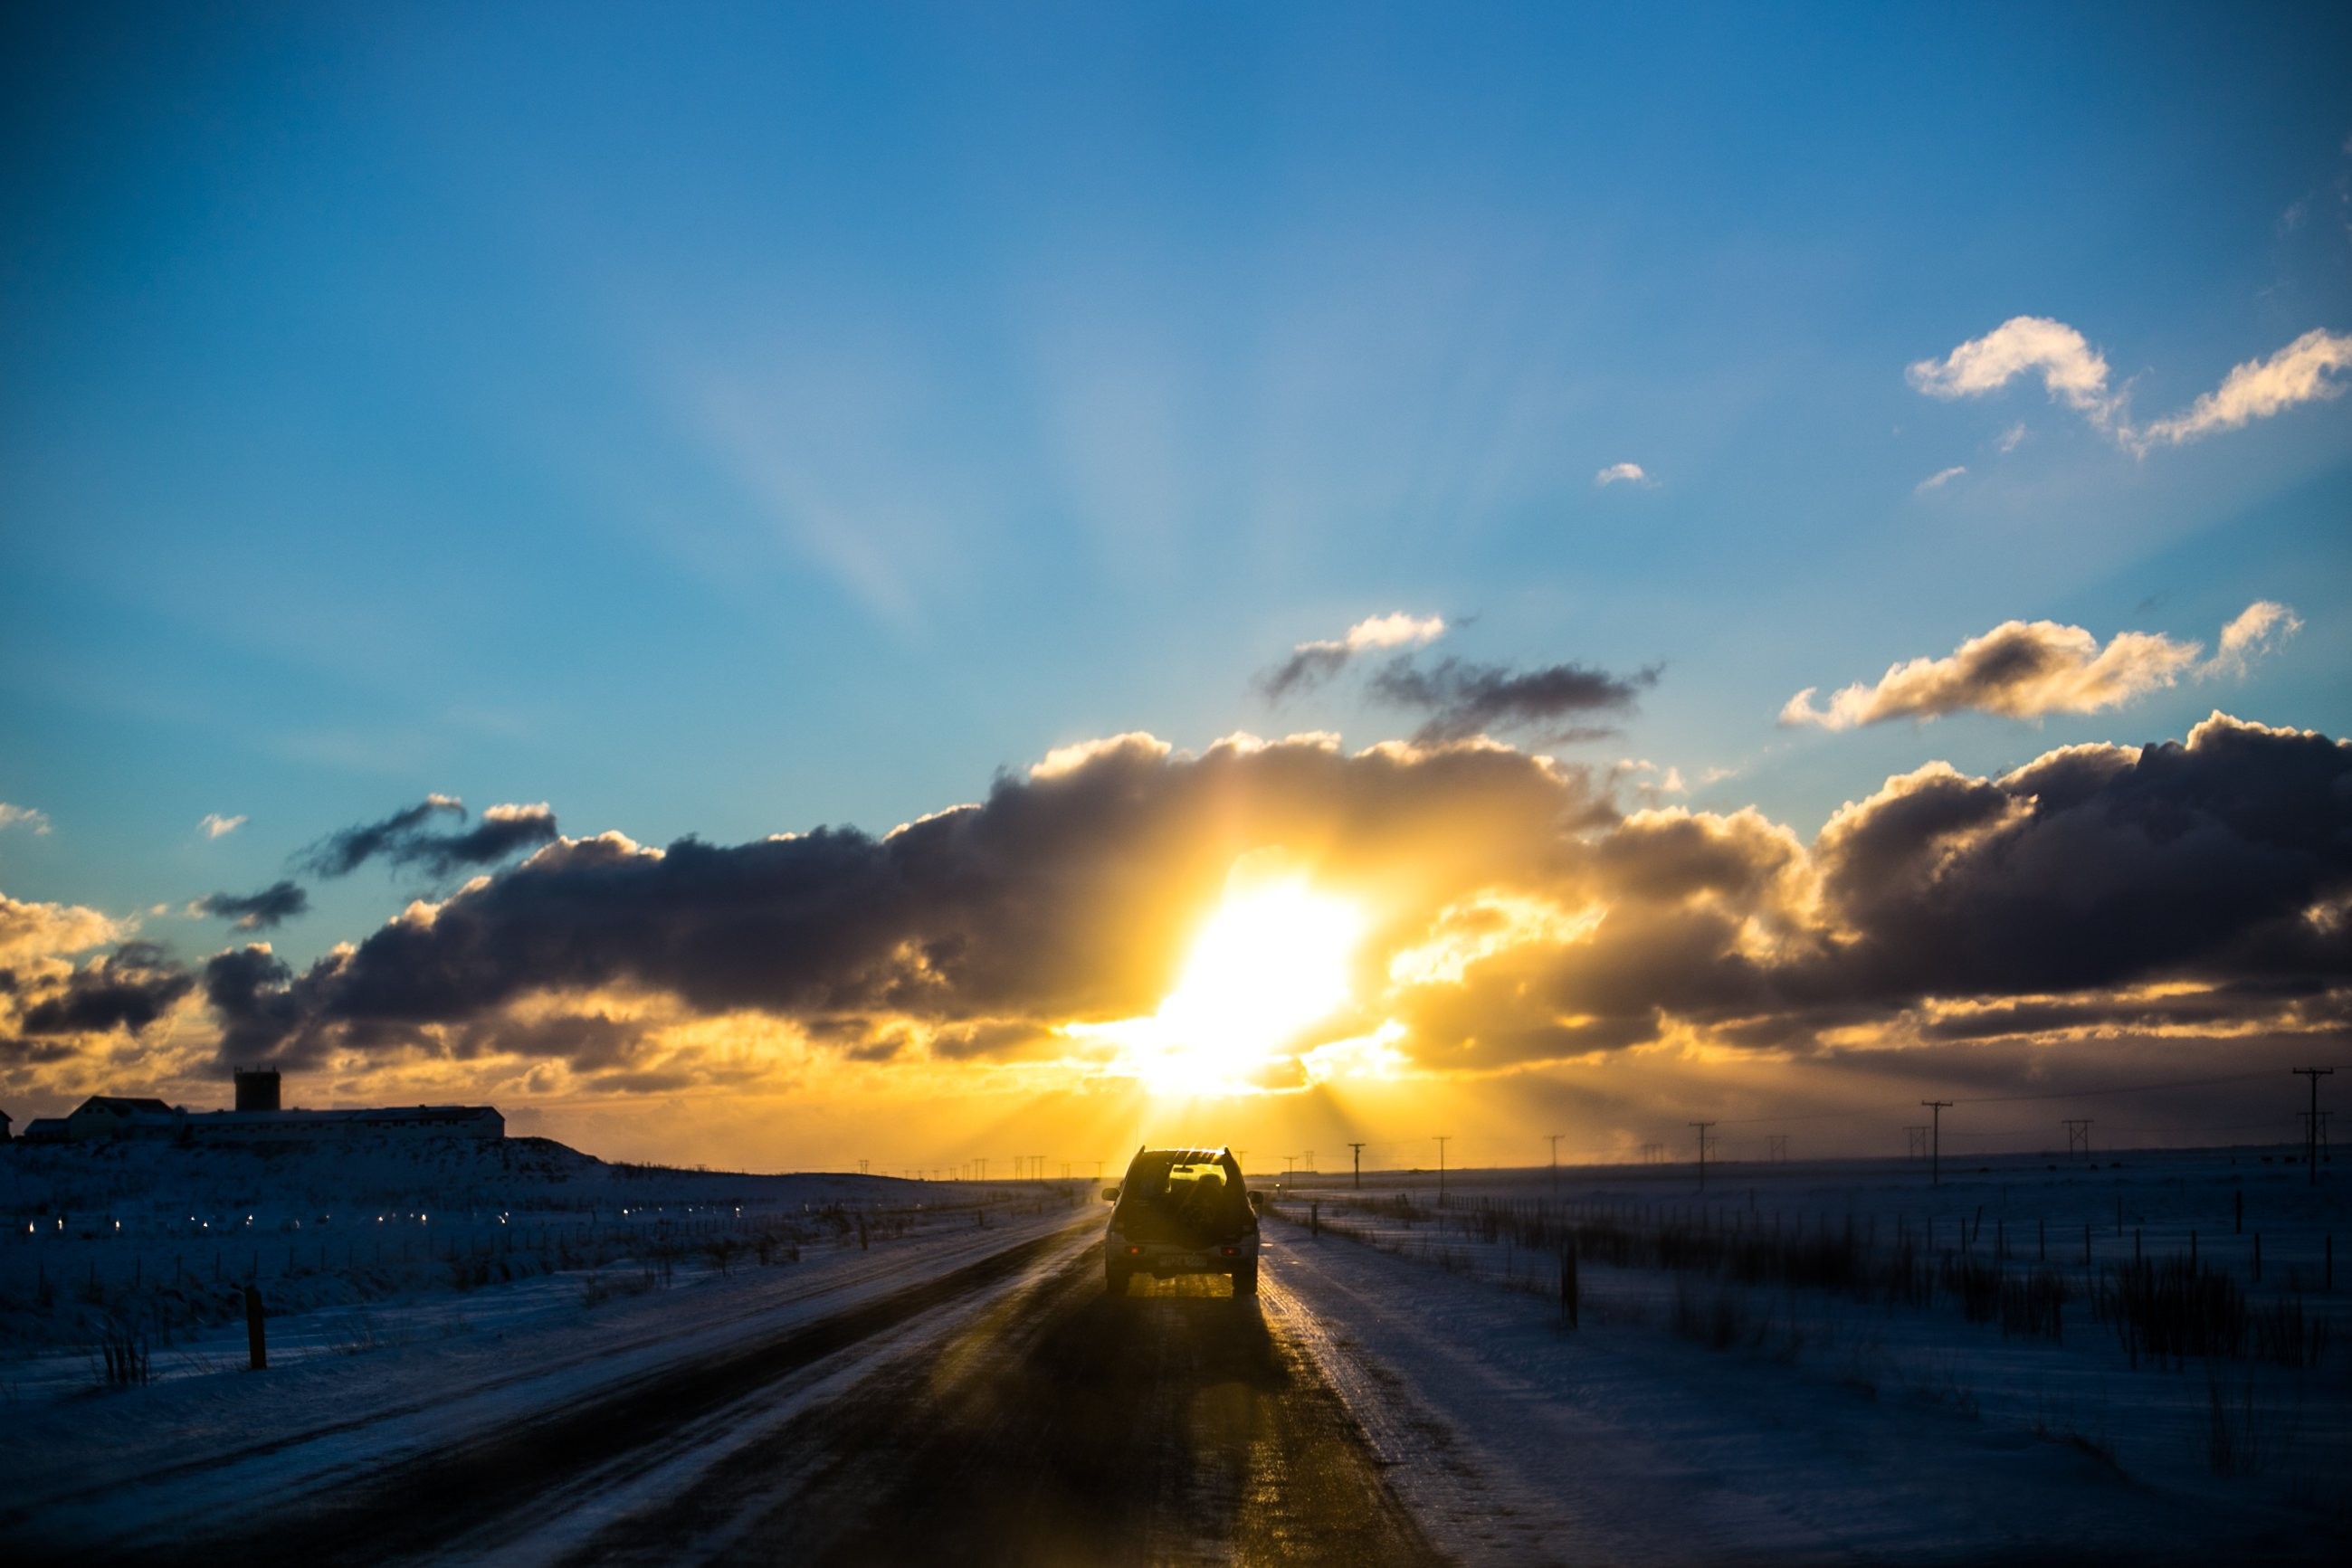 アイスランド高速道路の夕日の写真